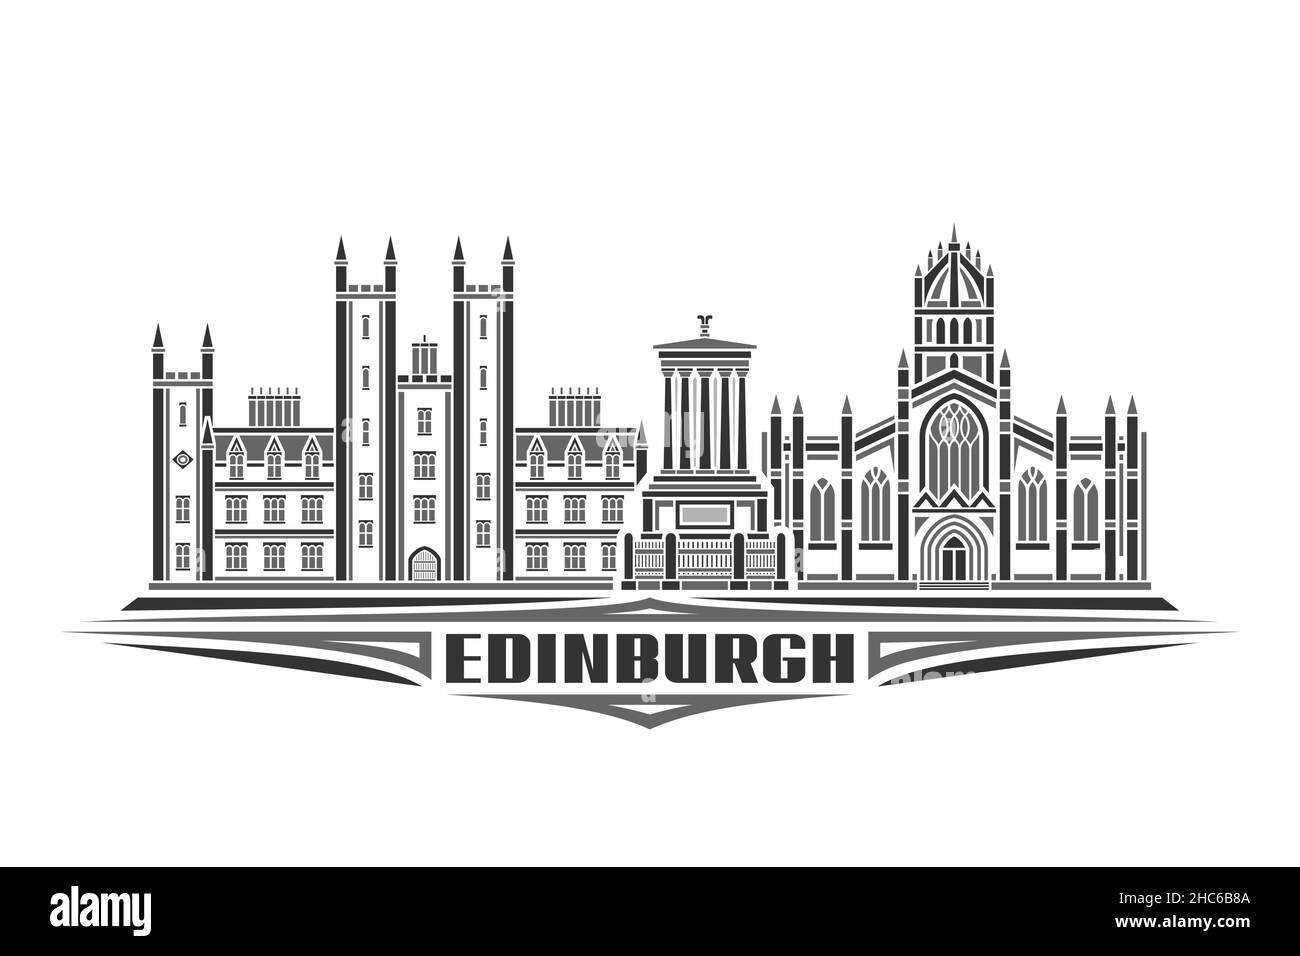 Illustration vectorielle d'Édimbourg, affiche horizontale monochrome avec design linéaire ville d'édimbourg, concept d'art urbain avec letteri décoratif Illustration de Vecteur